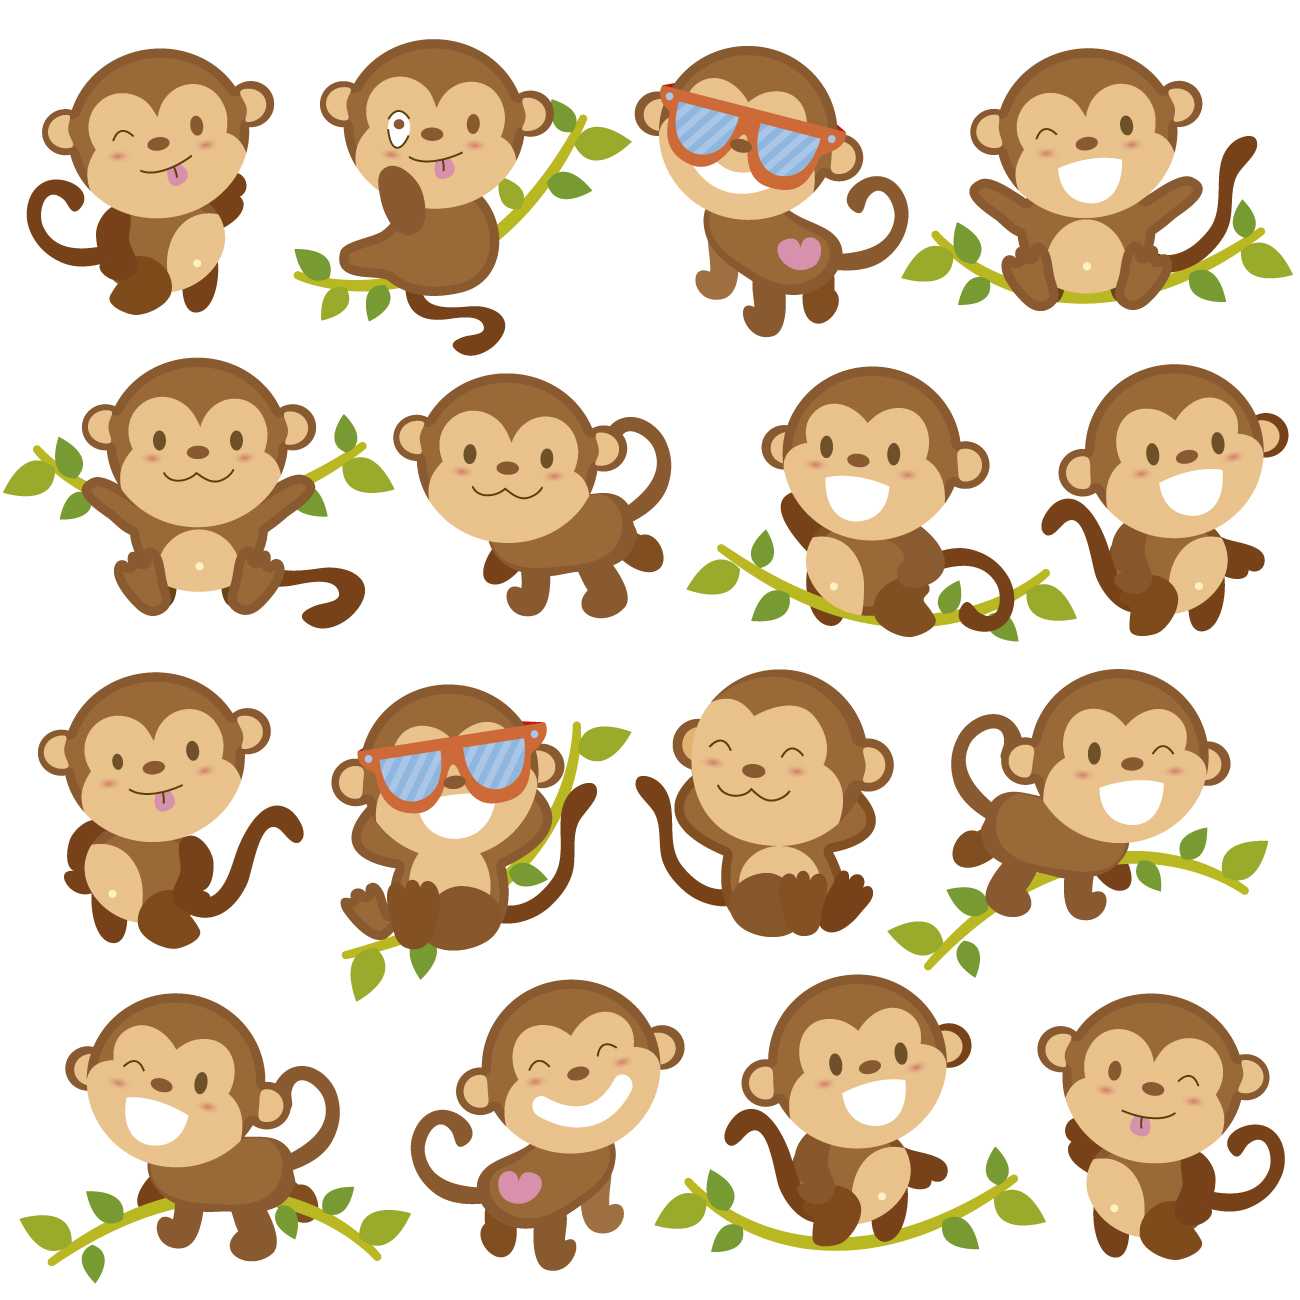 eyesight-monkeys